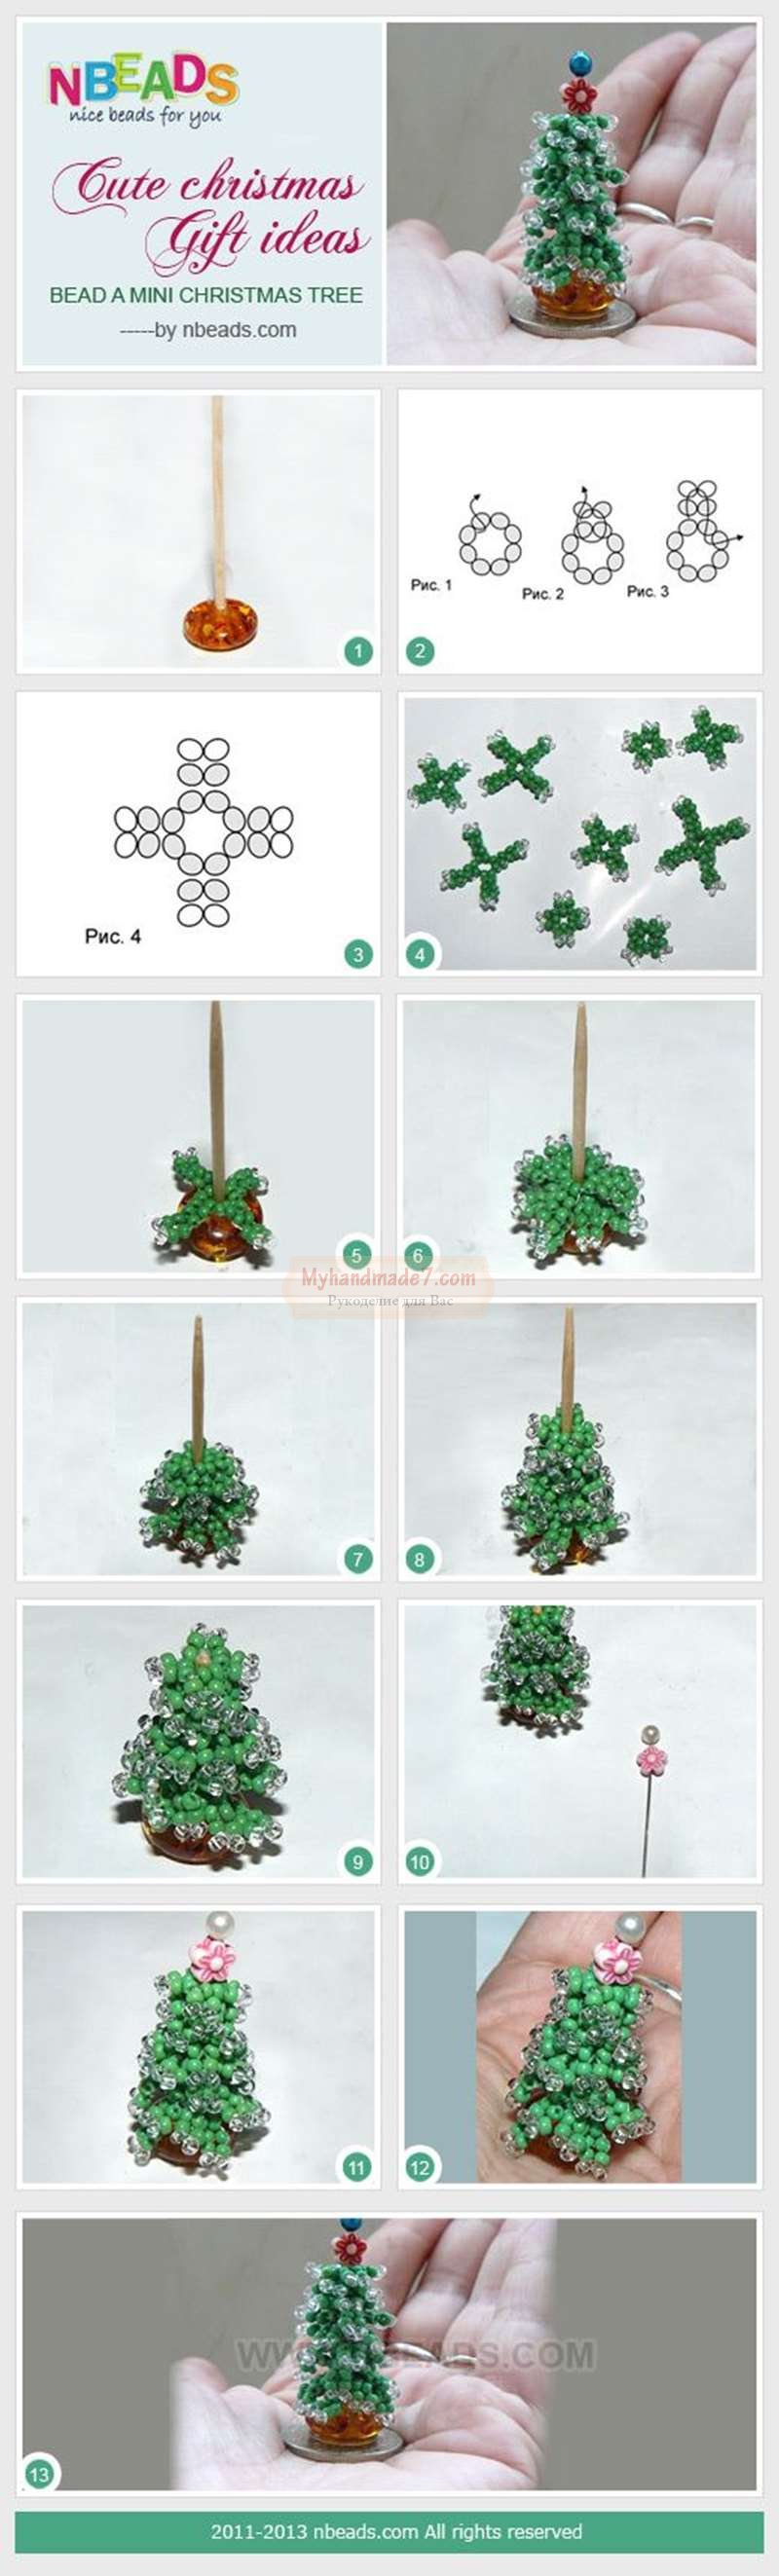 как сделать елку